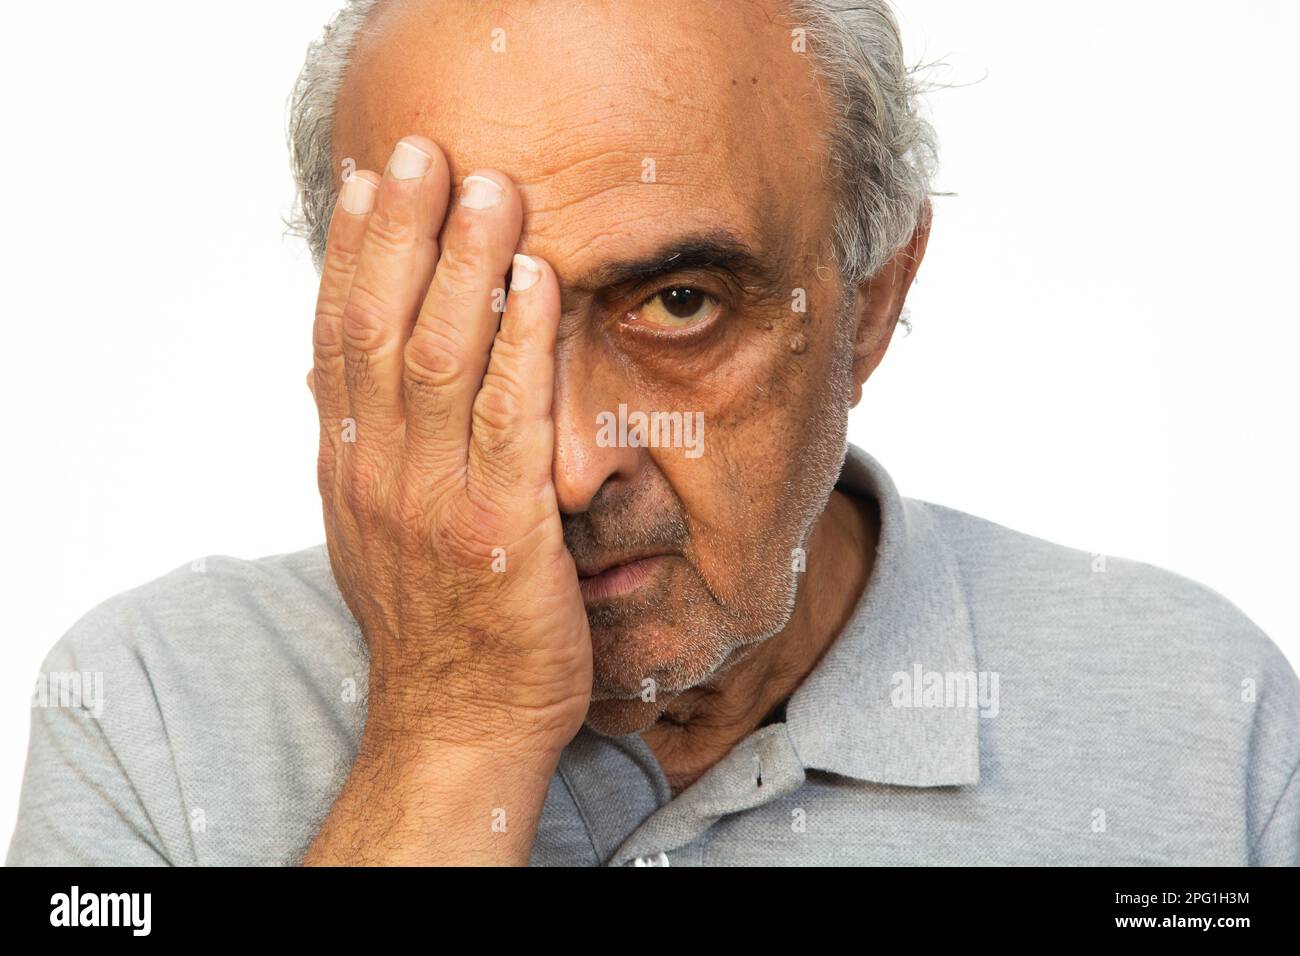 Triste vecchio uomo mano sopra occhio guardando la macchina fotografica Foto Stock